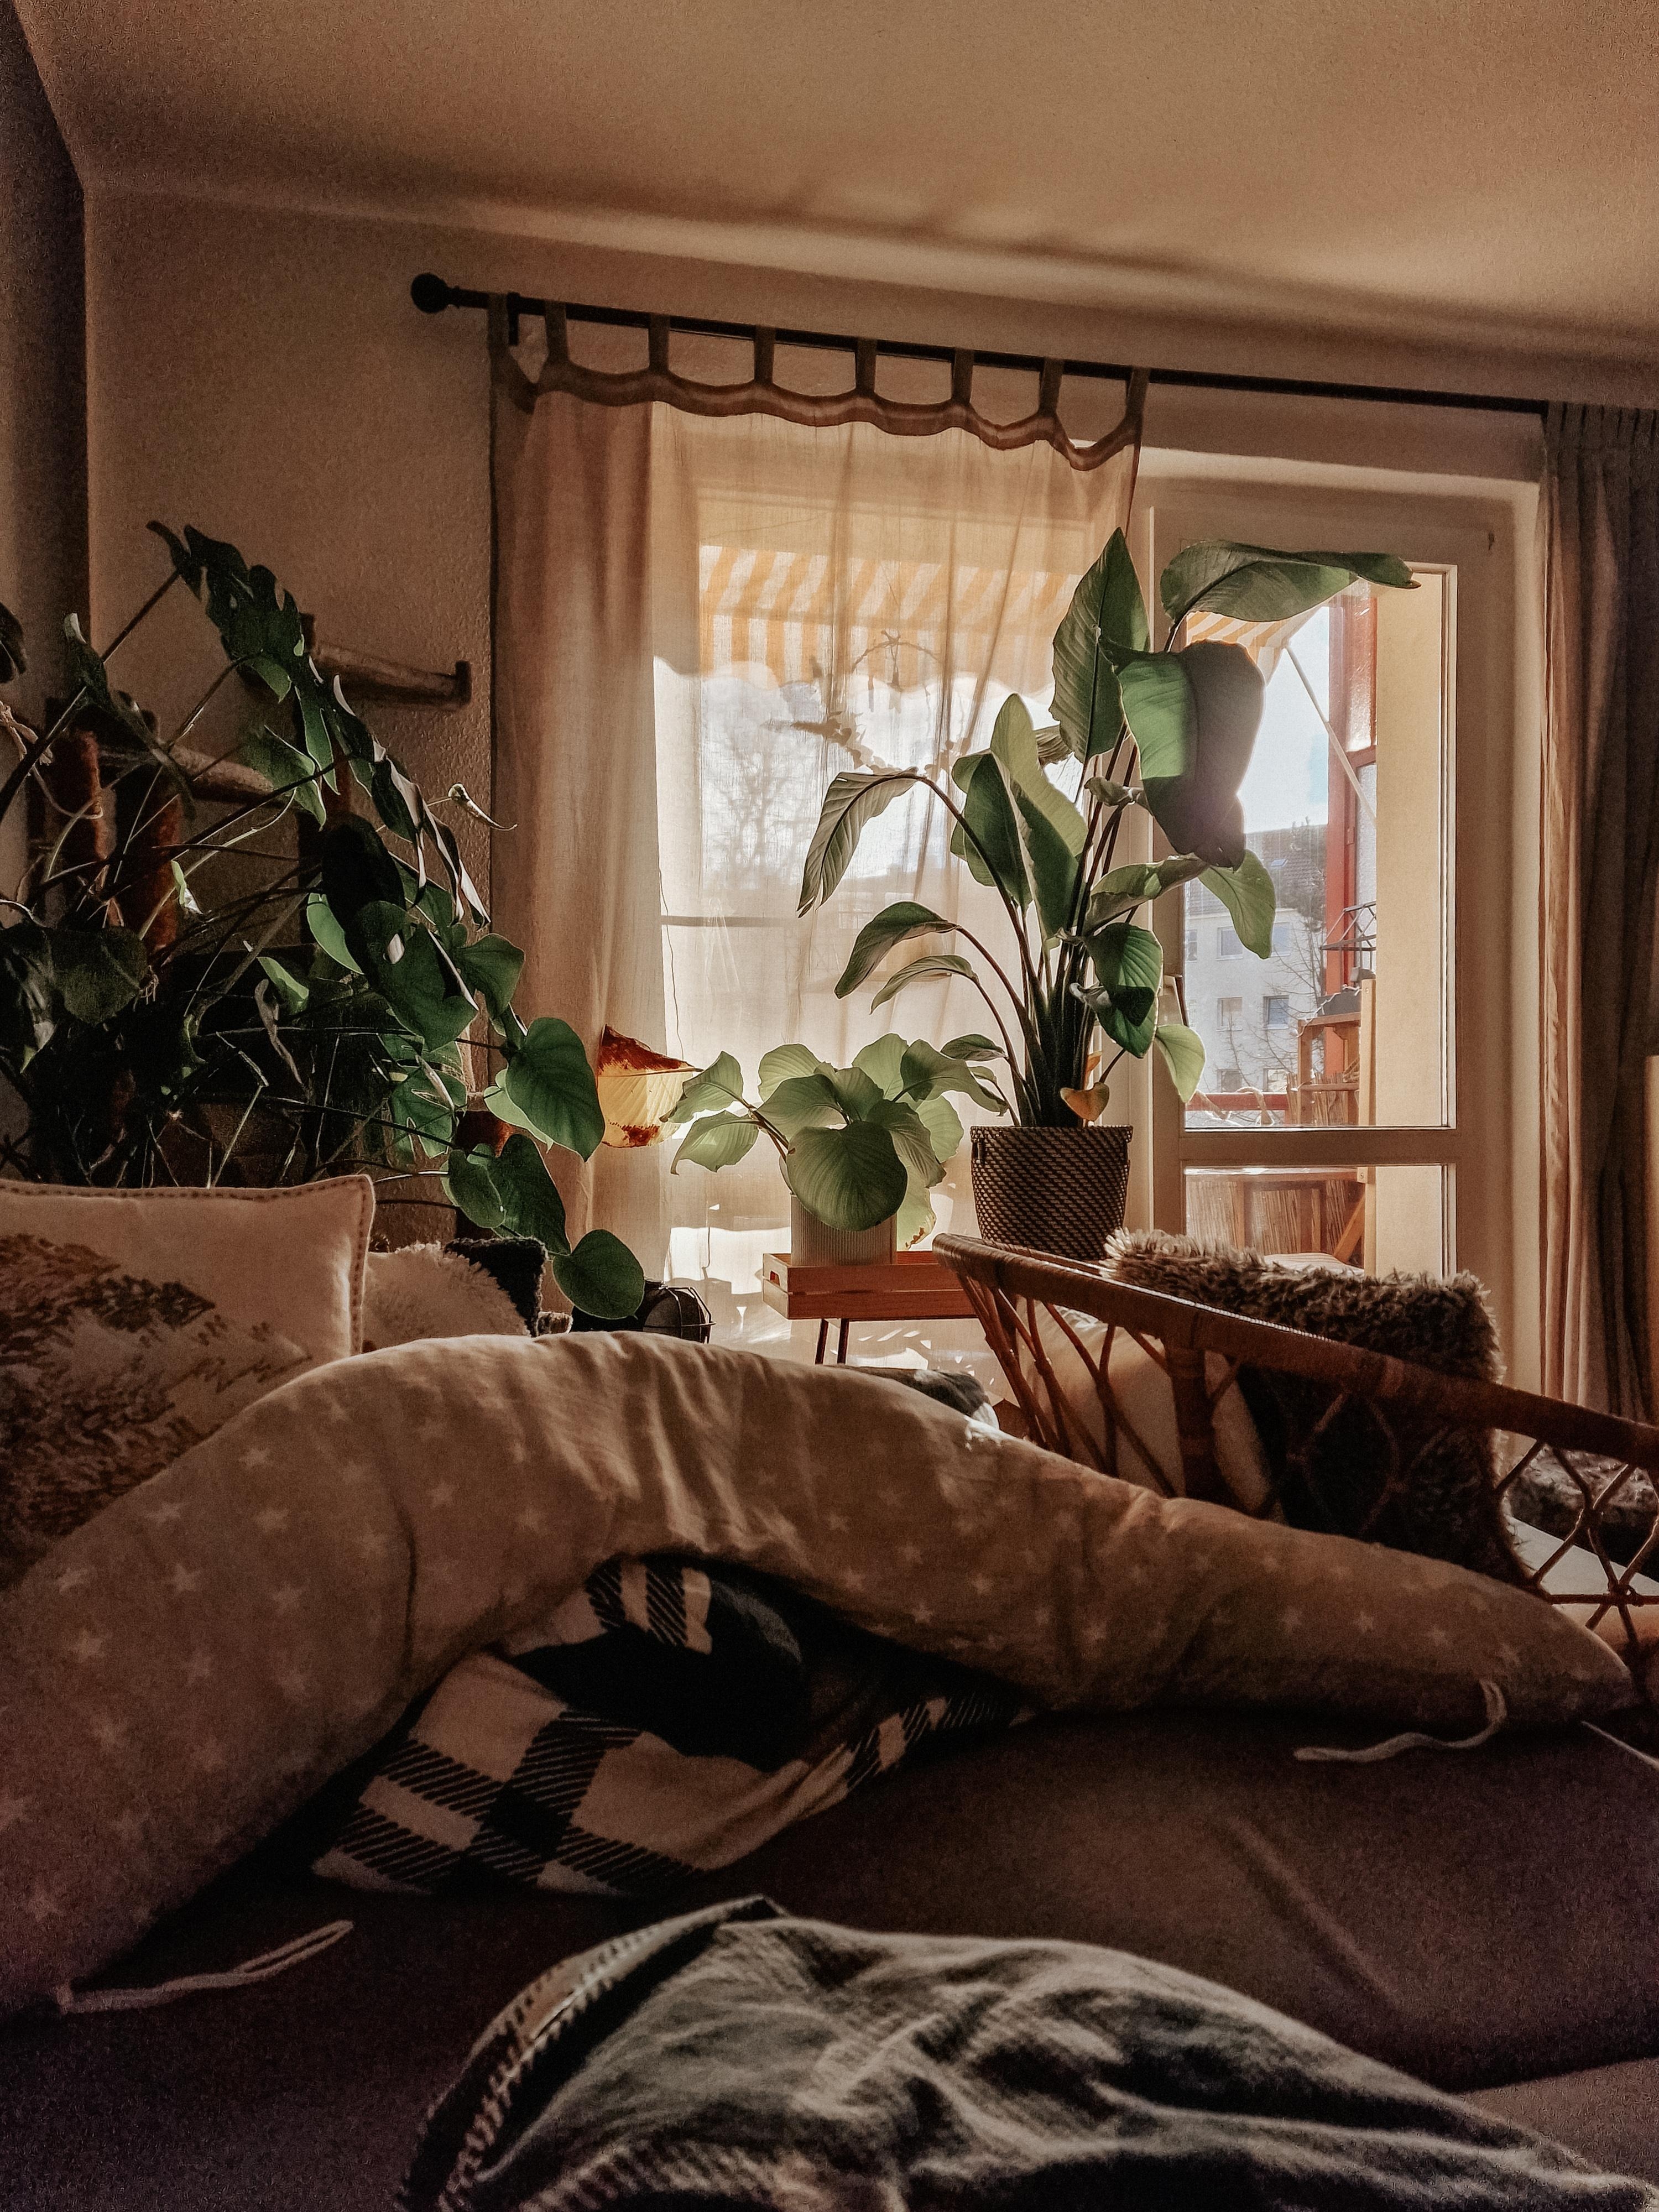 #Wohnzimmer #couchliebt #couchblick #couch #Balkon #Pflanzen #Vorhänge #kleinaberfein